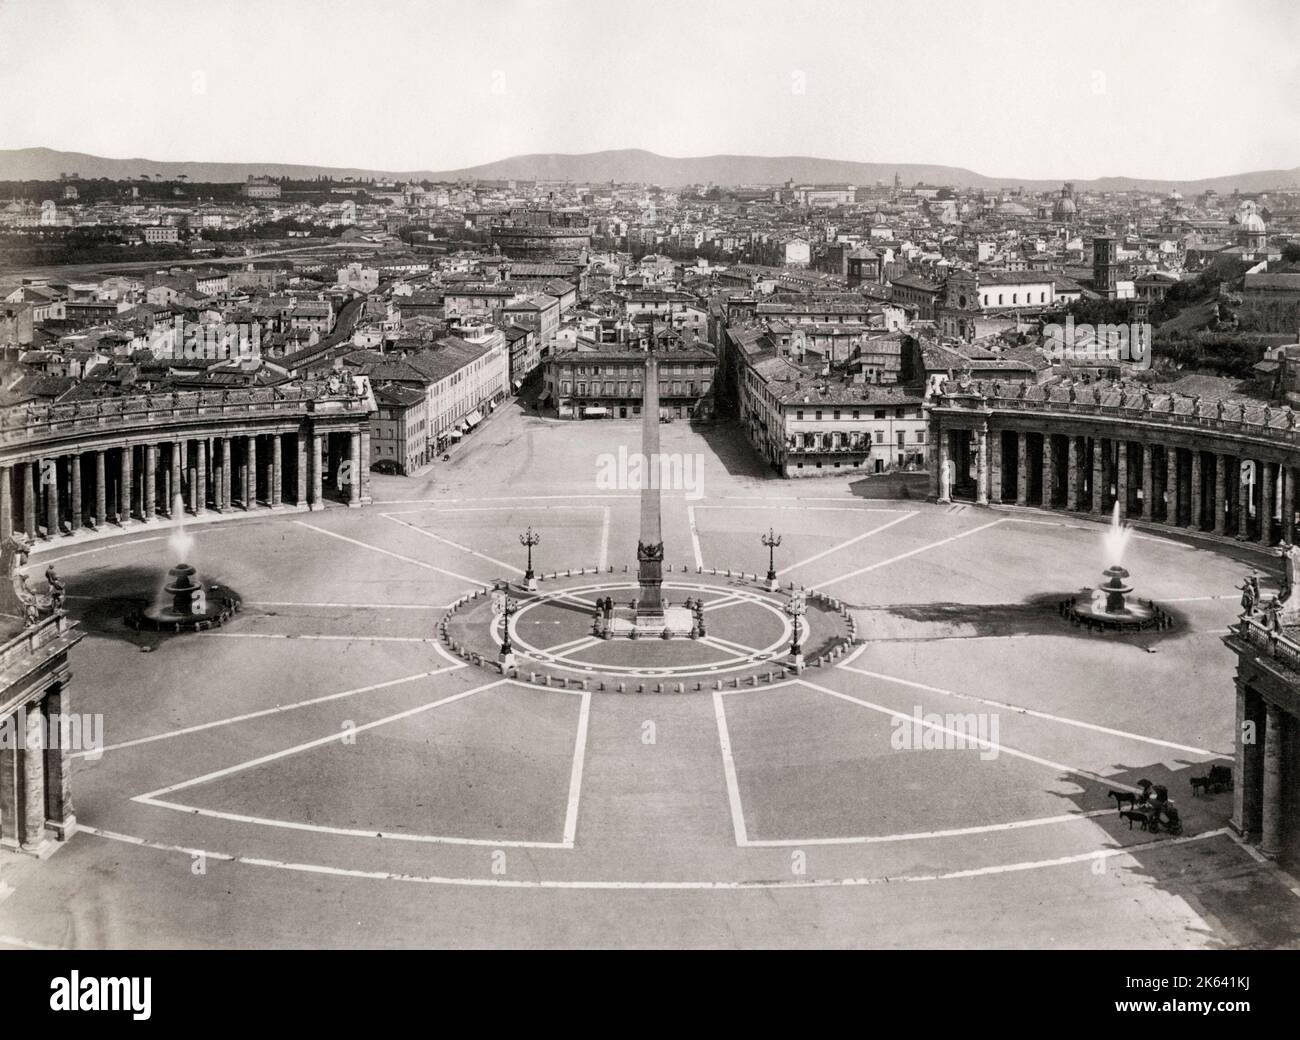 Statua e fontane al centro di Piazza San Pietro, il Vaticano, Roma, Italia. Vintage 19th ° secolo fotografia. Foto Stock